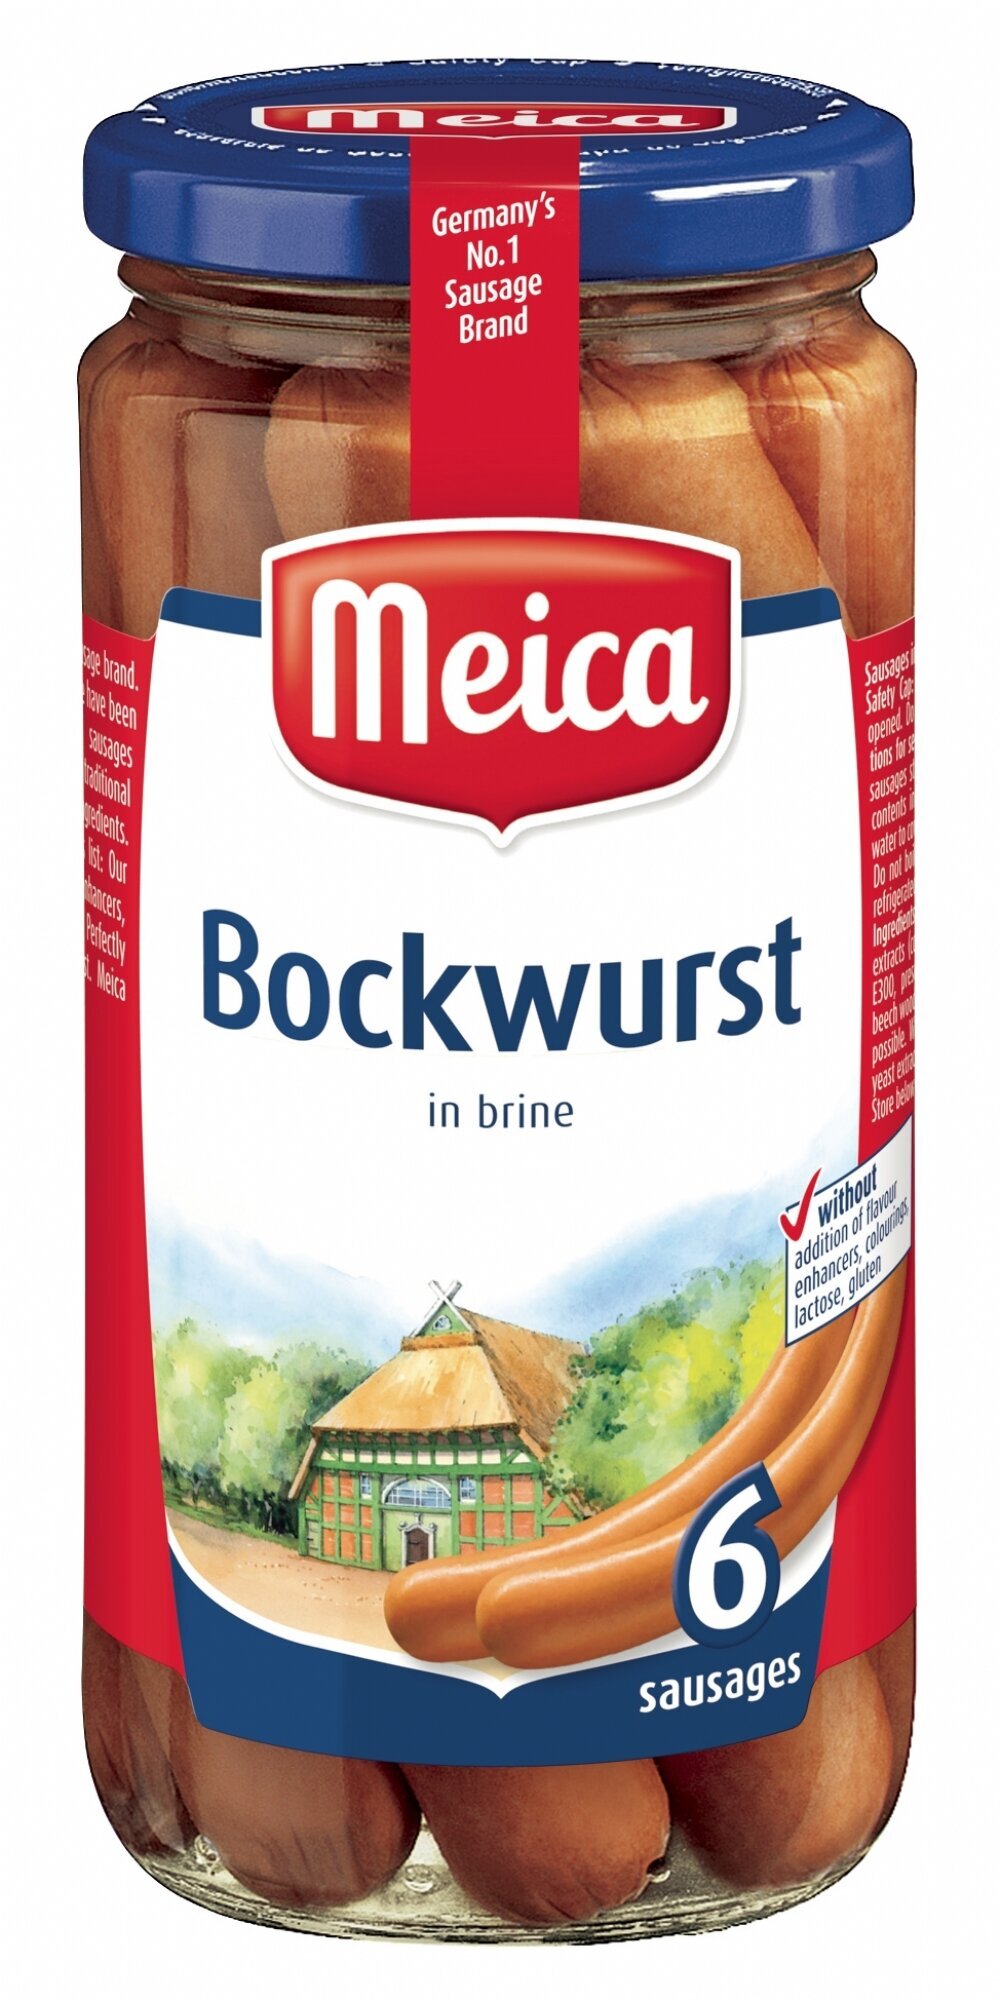 德國Meica 香腸 Bockwurst Sausages ( 1罐-6's 180克) #03856704#德國腸,信心保證!